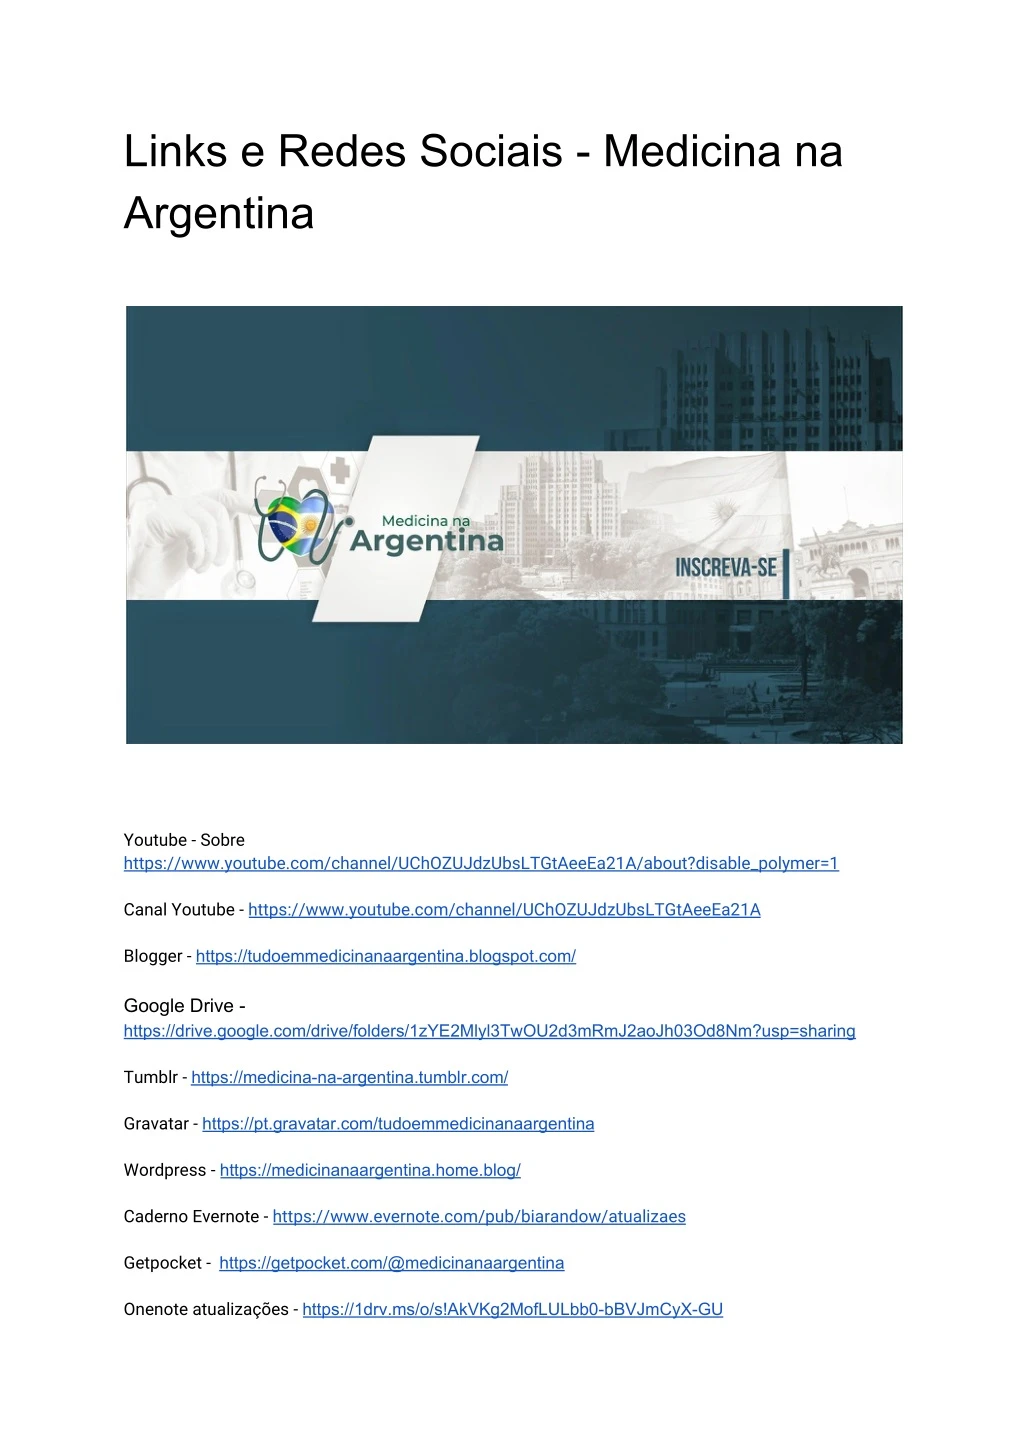 links e redes sociais medicina na argentina